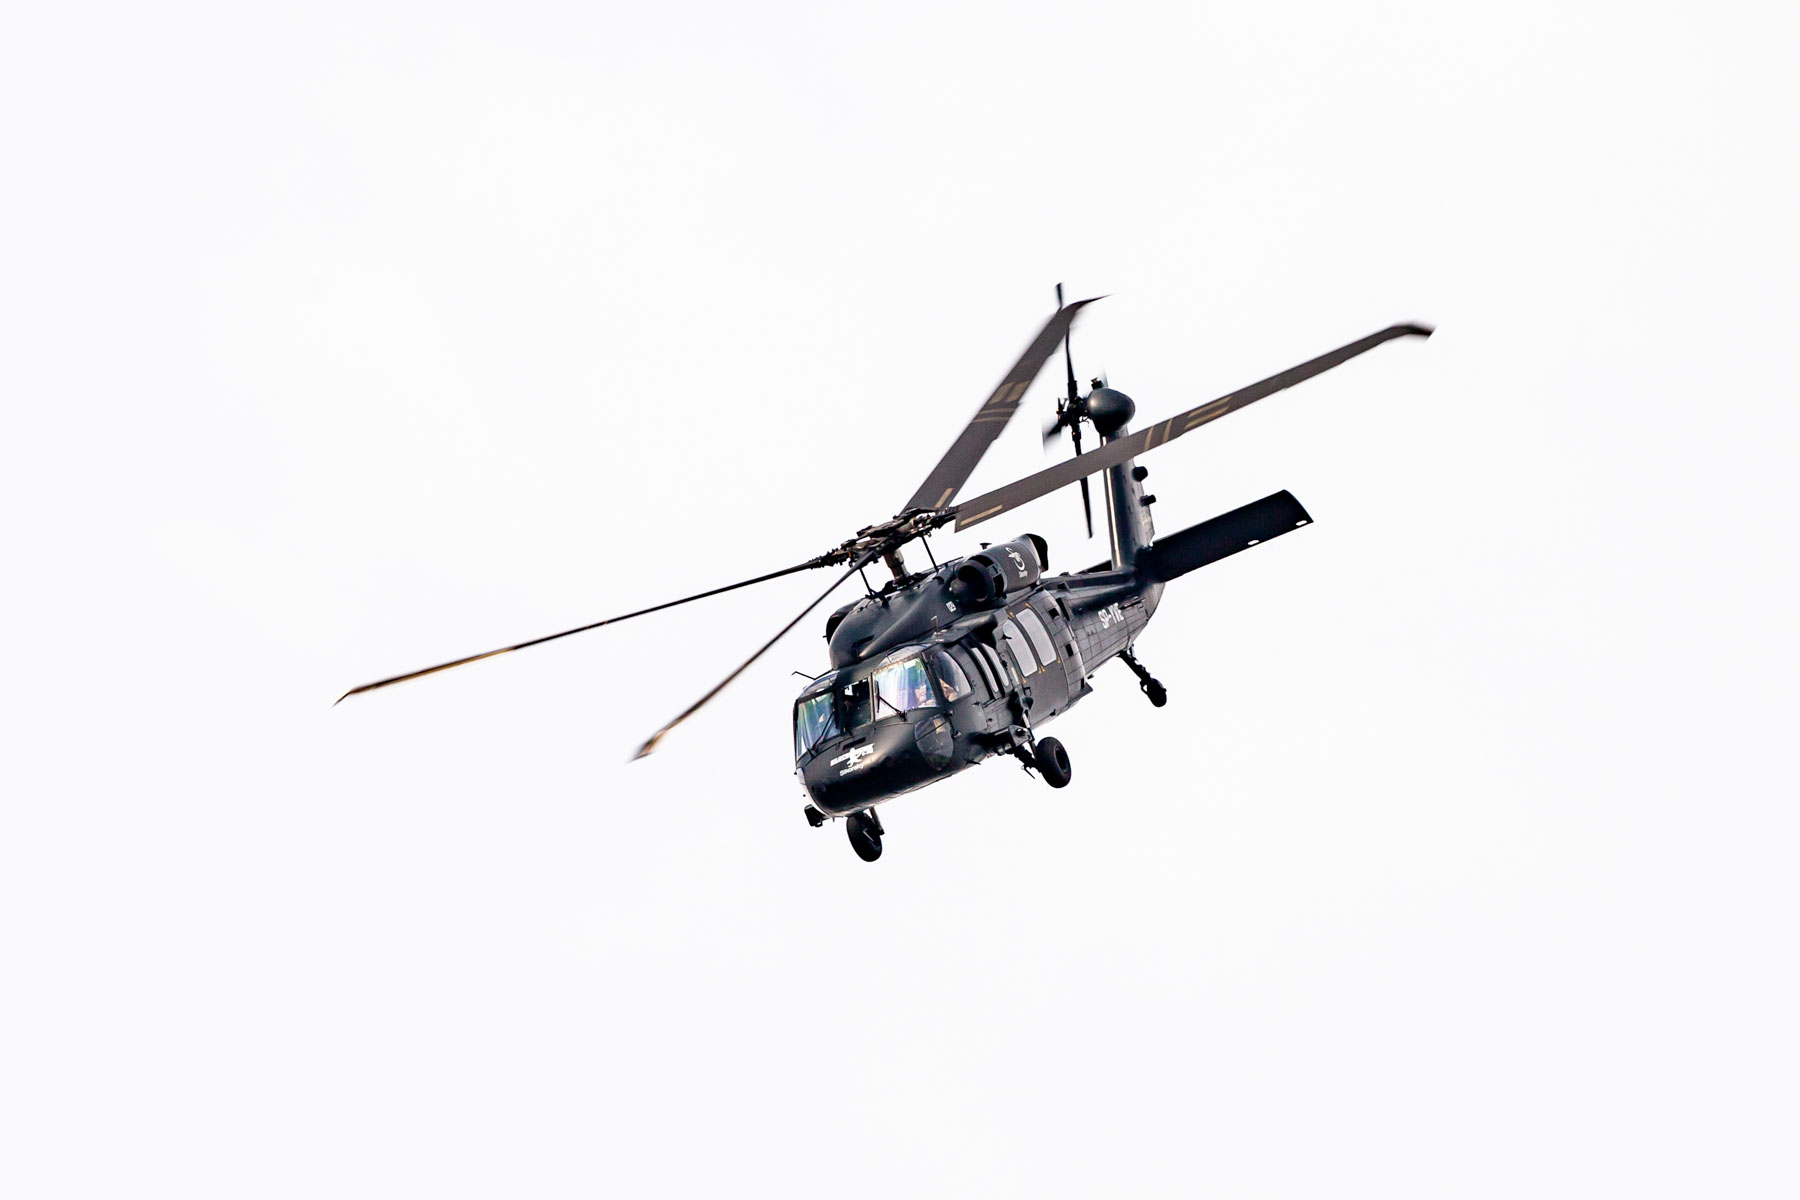 Czarny helikopter Black Hawk lecący na niebie.